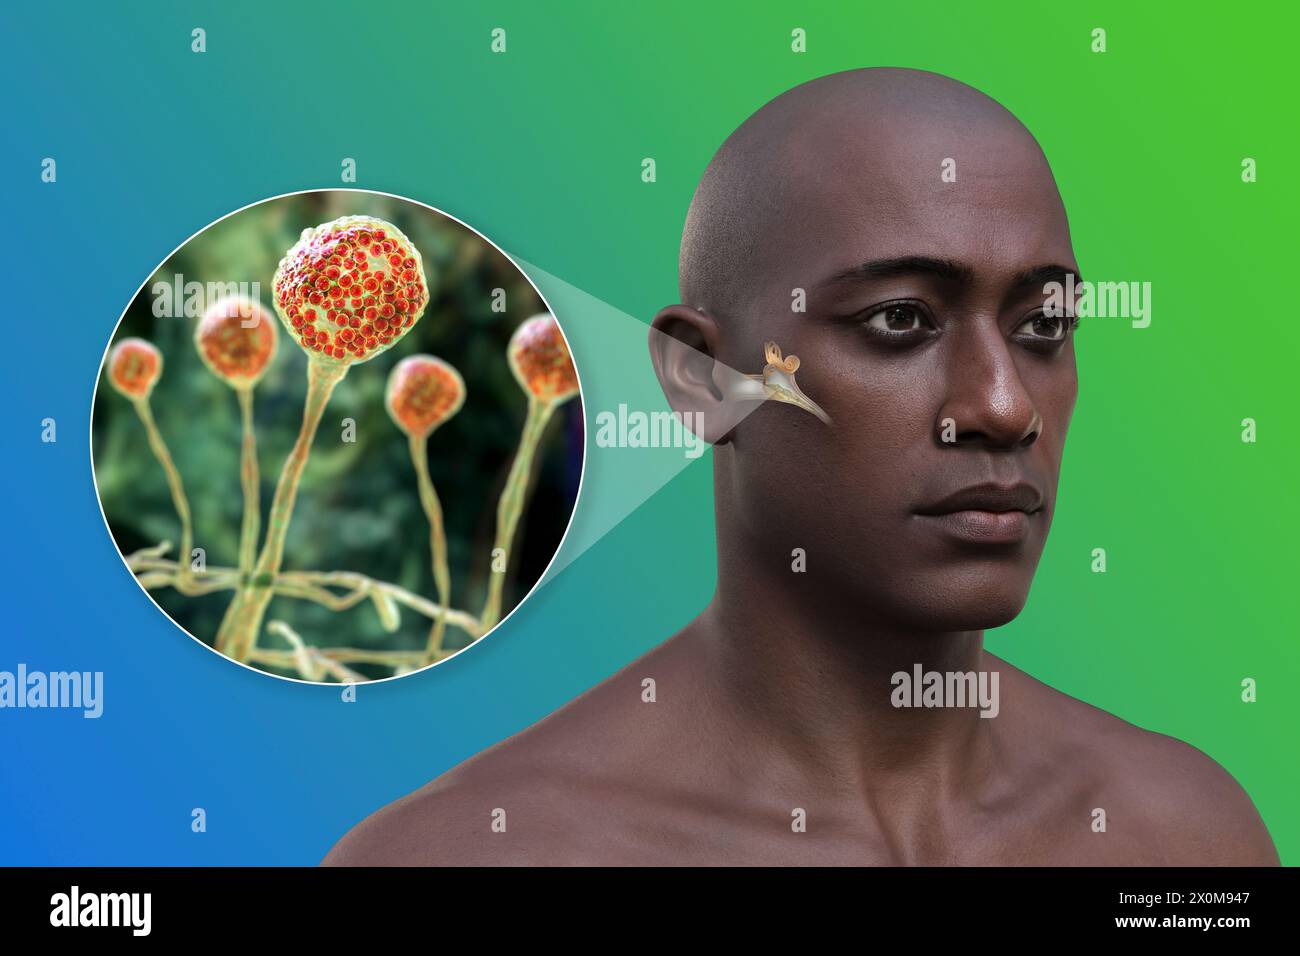 3D-Darstellung eines Mannes mit einer Mittelohrentzündung (Otitis Media) und einer Nahaufnahme von Pilzen, einem der potentiellen Erreger. Zu den Symptomen gehören Entzündungen, Flüssigkeitsansammlungen und Schmerzen im Ohr. Stockfoto